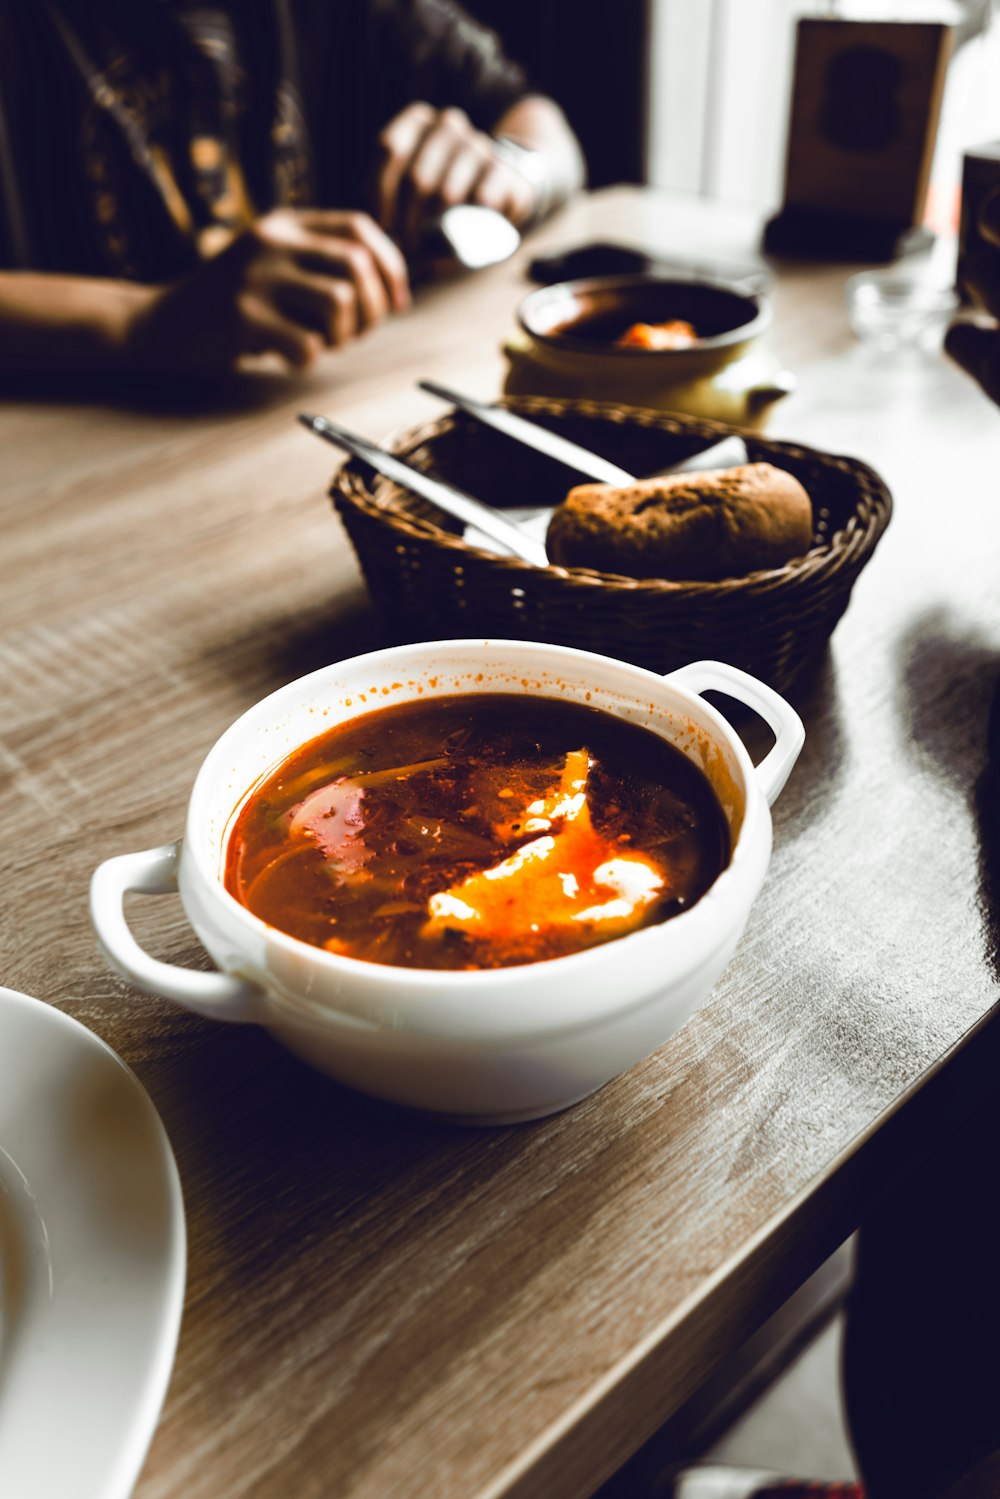 Eine Schüssel Suppe steht auf einem Tisch